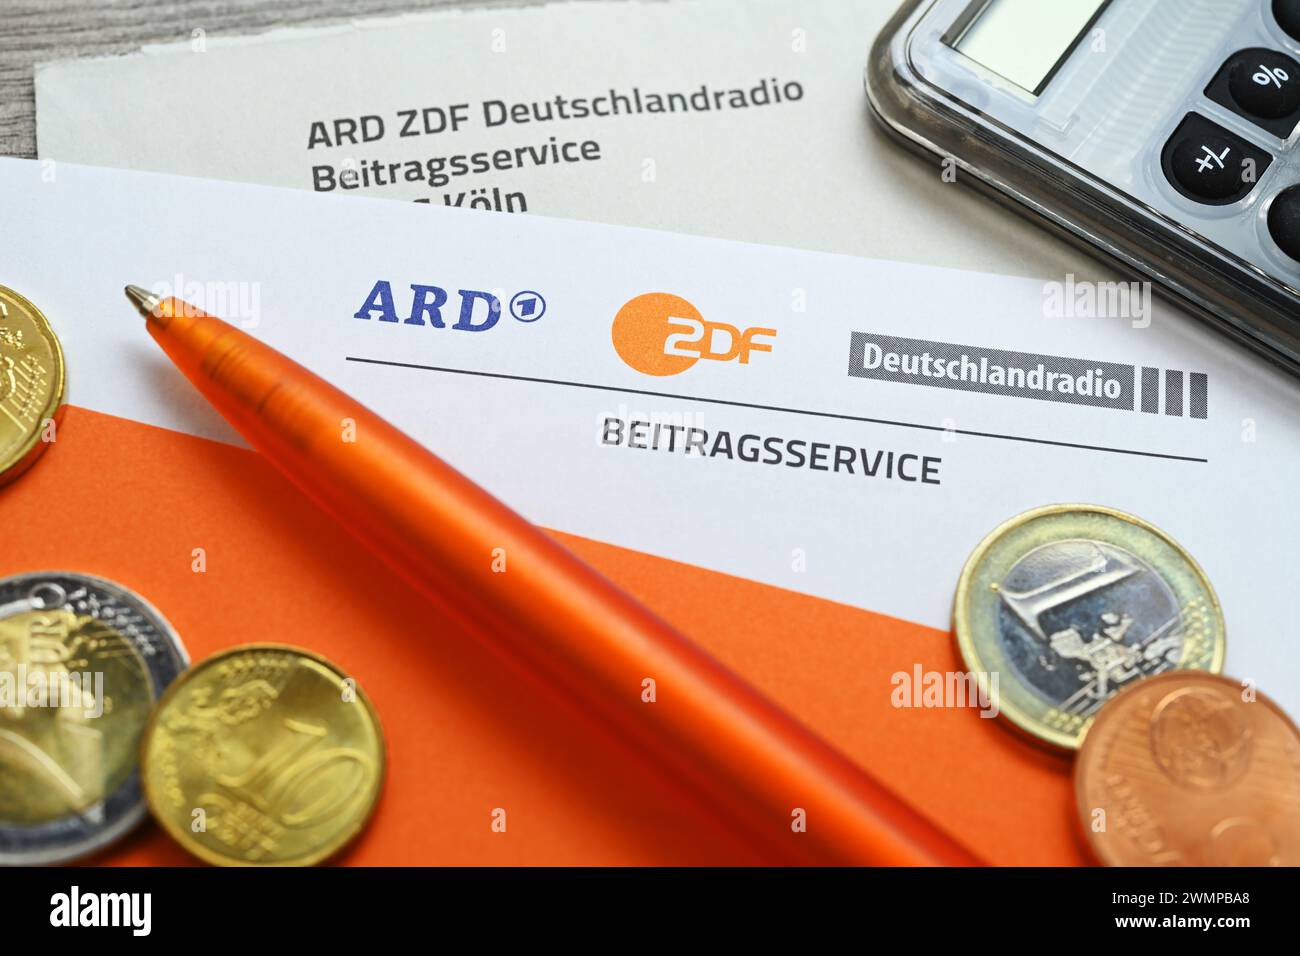 Lettera di ARD ZDF Deutschlandradio Beitragsservice con Calcolatrice e monete, aumento simbolico foto nella tassa di trasmissione Foto Stock